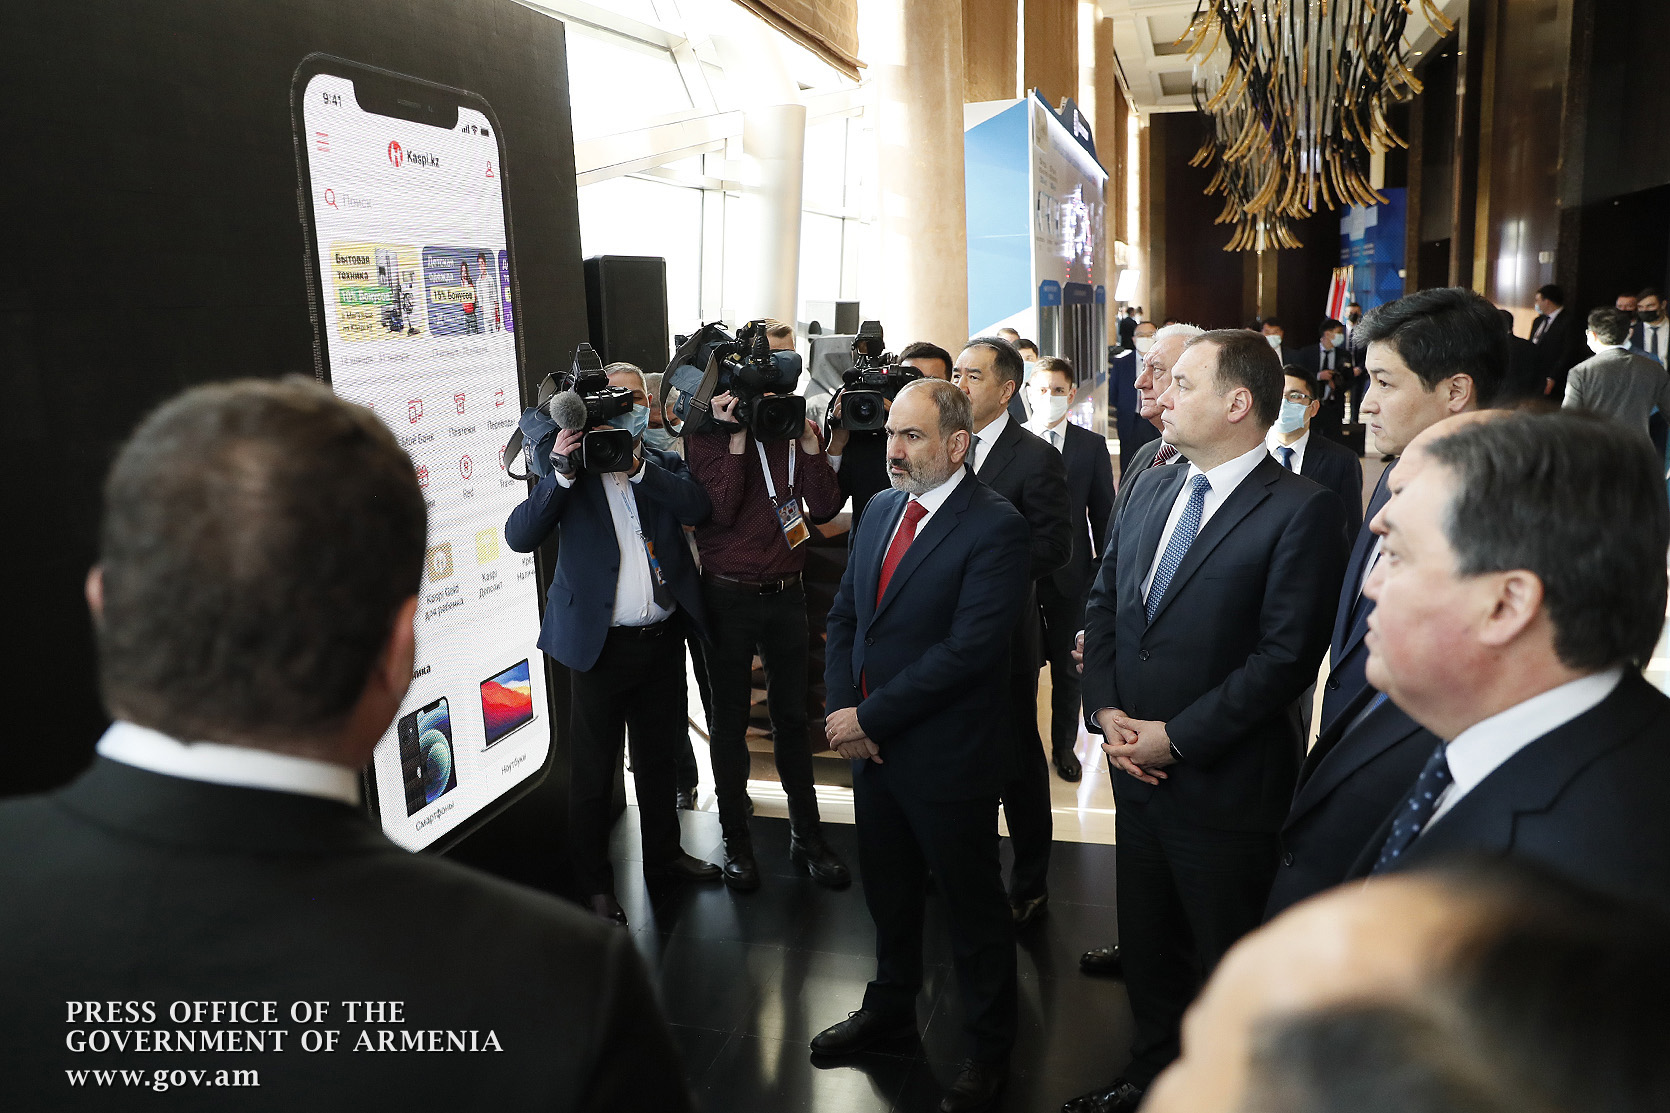 Надо стремиться к тому, чтобы на цифровом уровне исчезли границы между государствами-членами ЕАЭС: речь премьер-министра на форуме “Almaty Digital Forum 2021”